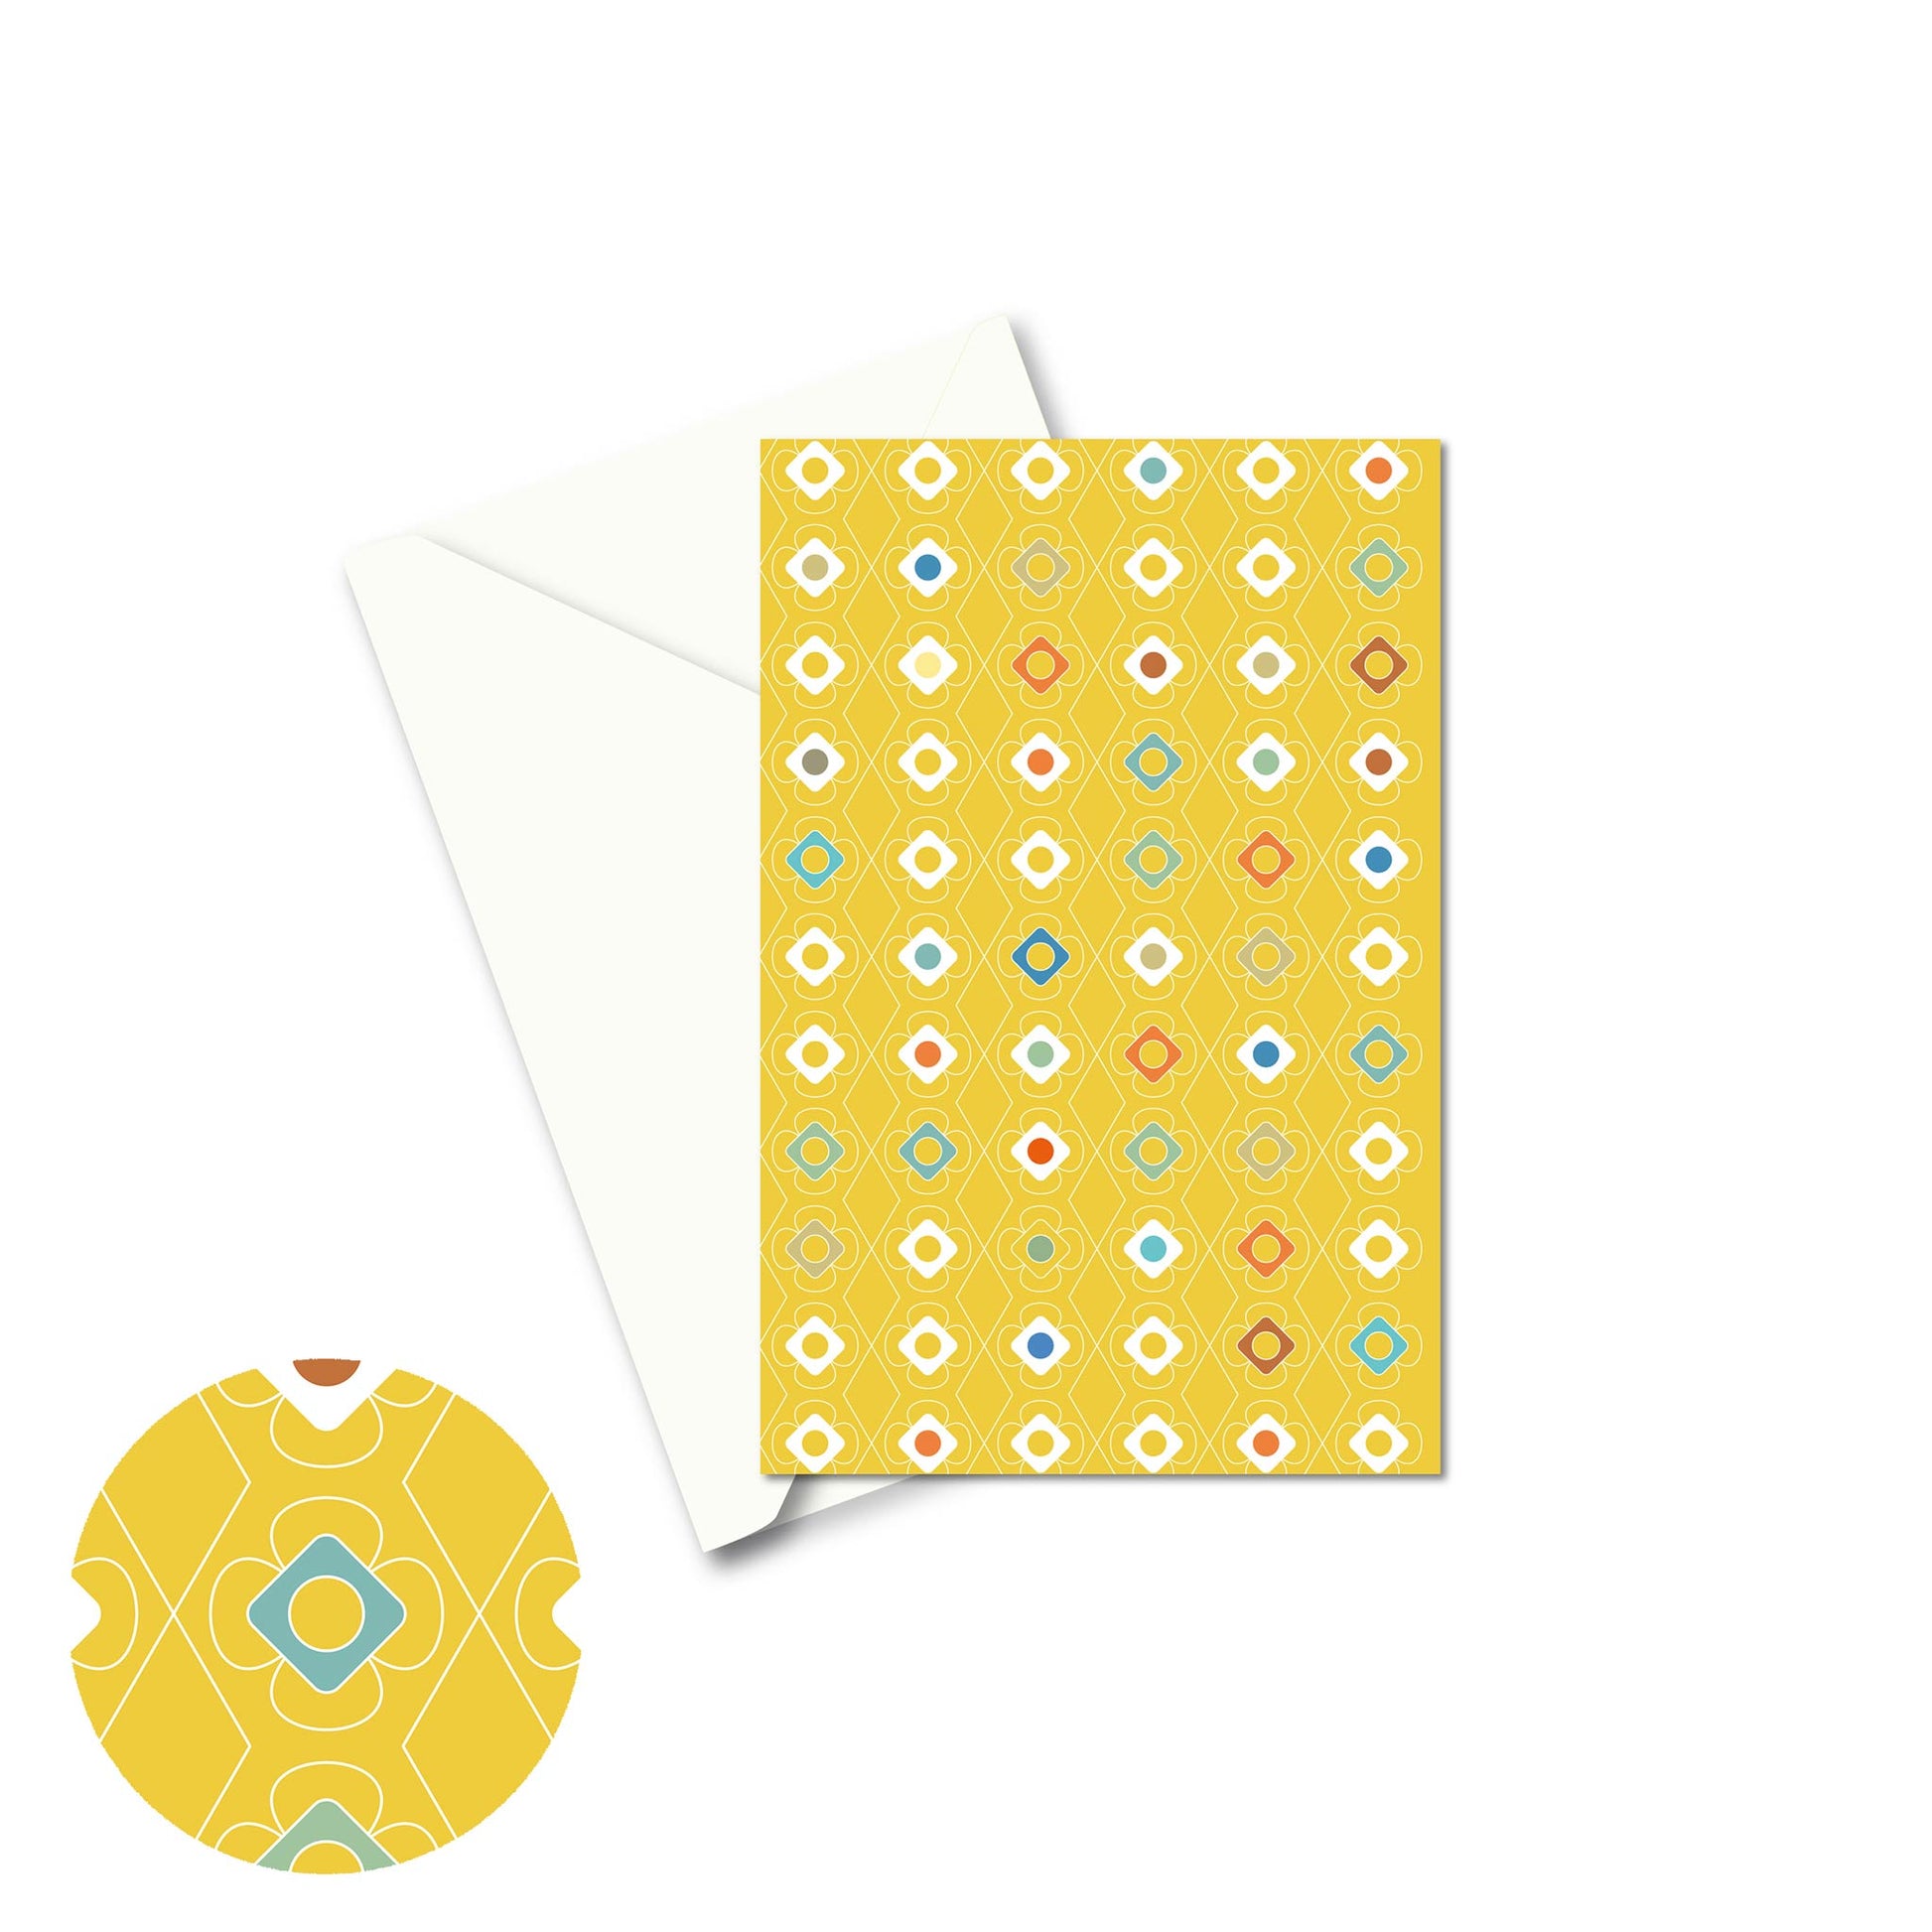 Productafbeelding, wenskaart "kleur carrousel geel", de voorzijde met een envelop